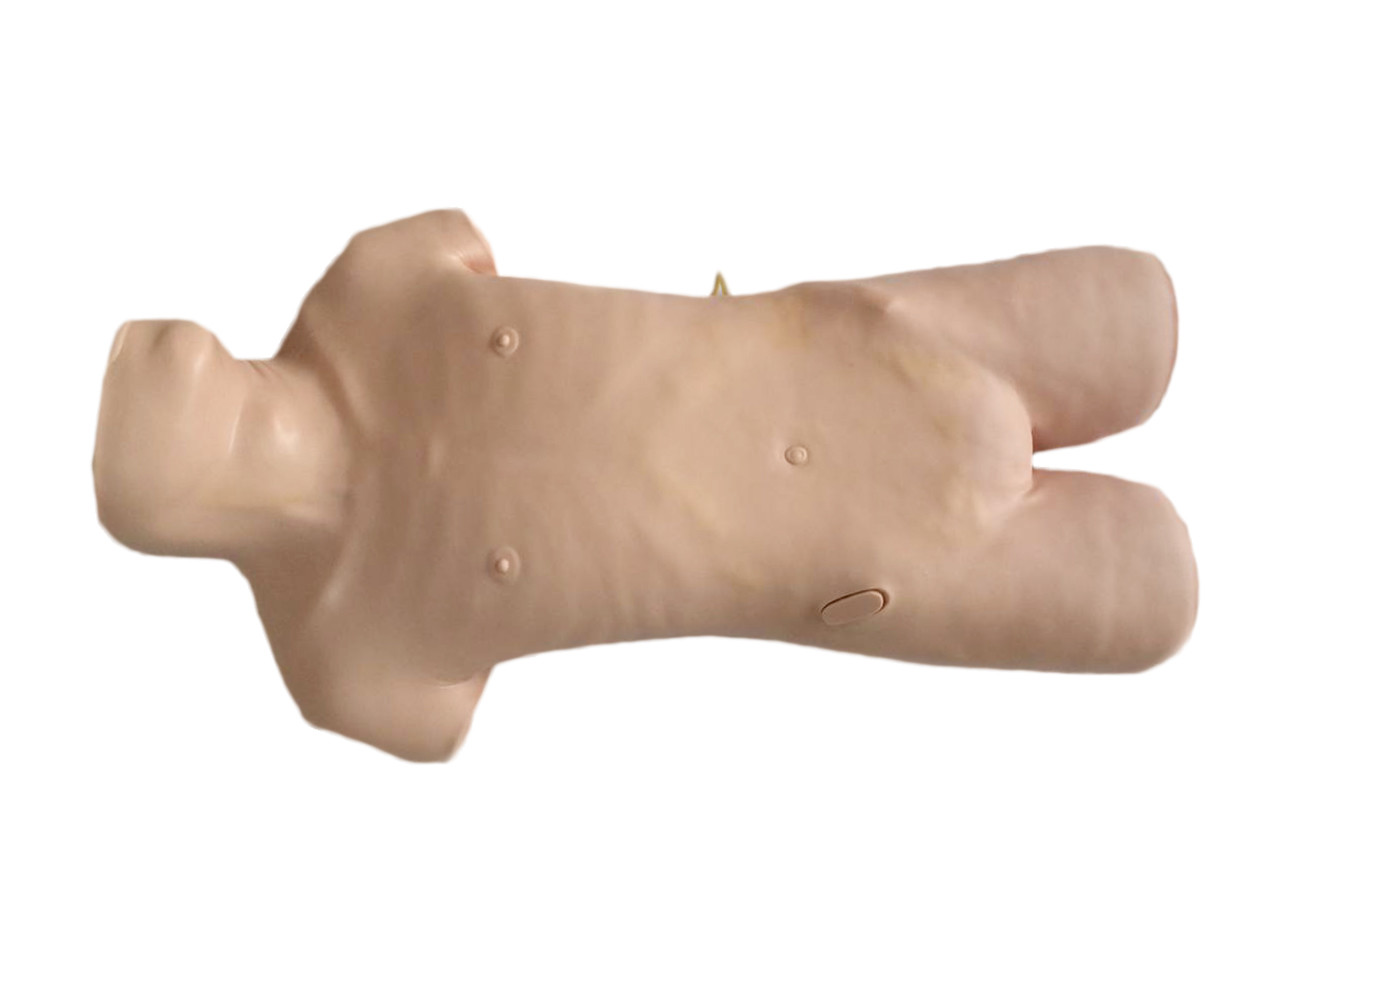 穿刺の練習のための現実的な上体の臨床シミュレーションの abdominocentesis の人体摸型